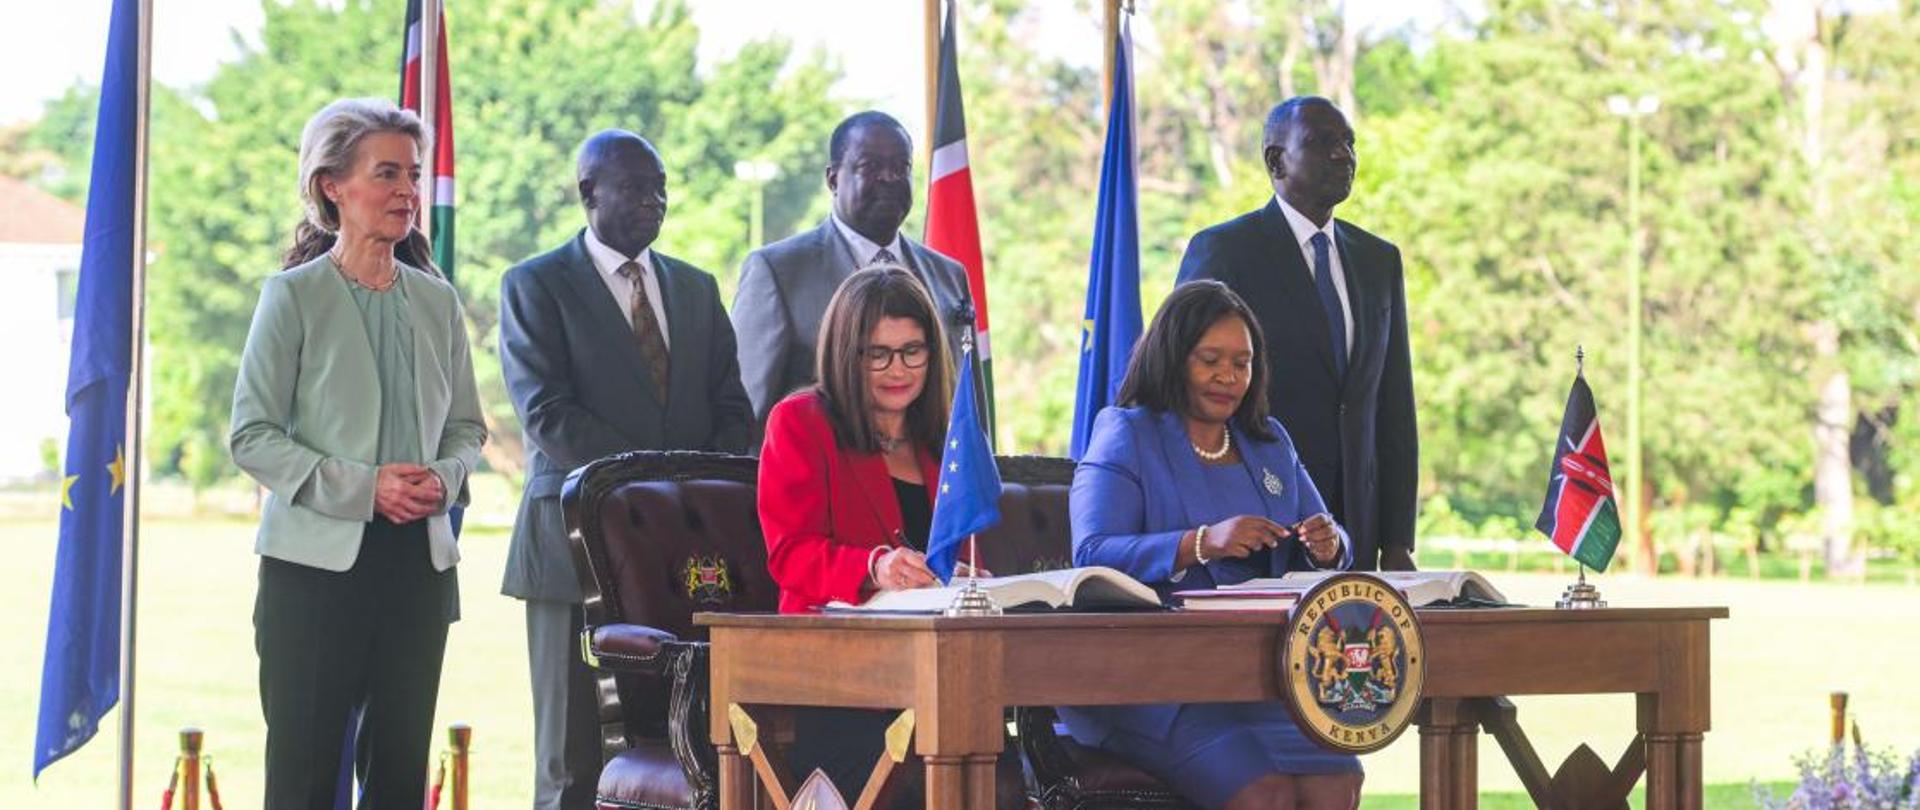 Umowa o partnerstwie gospodarczym Unia Europejska - Kenia 